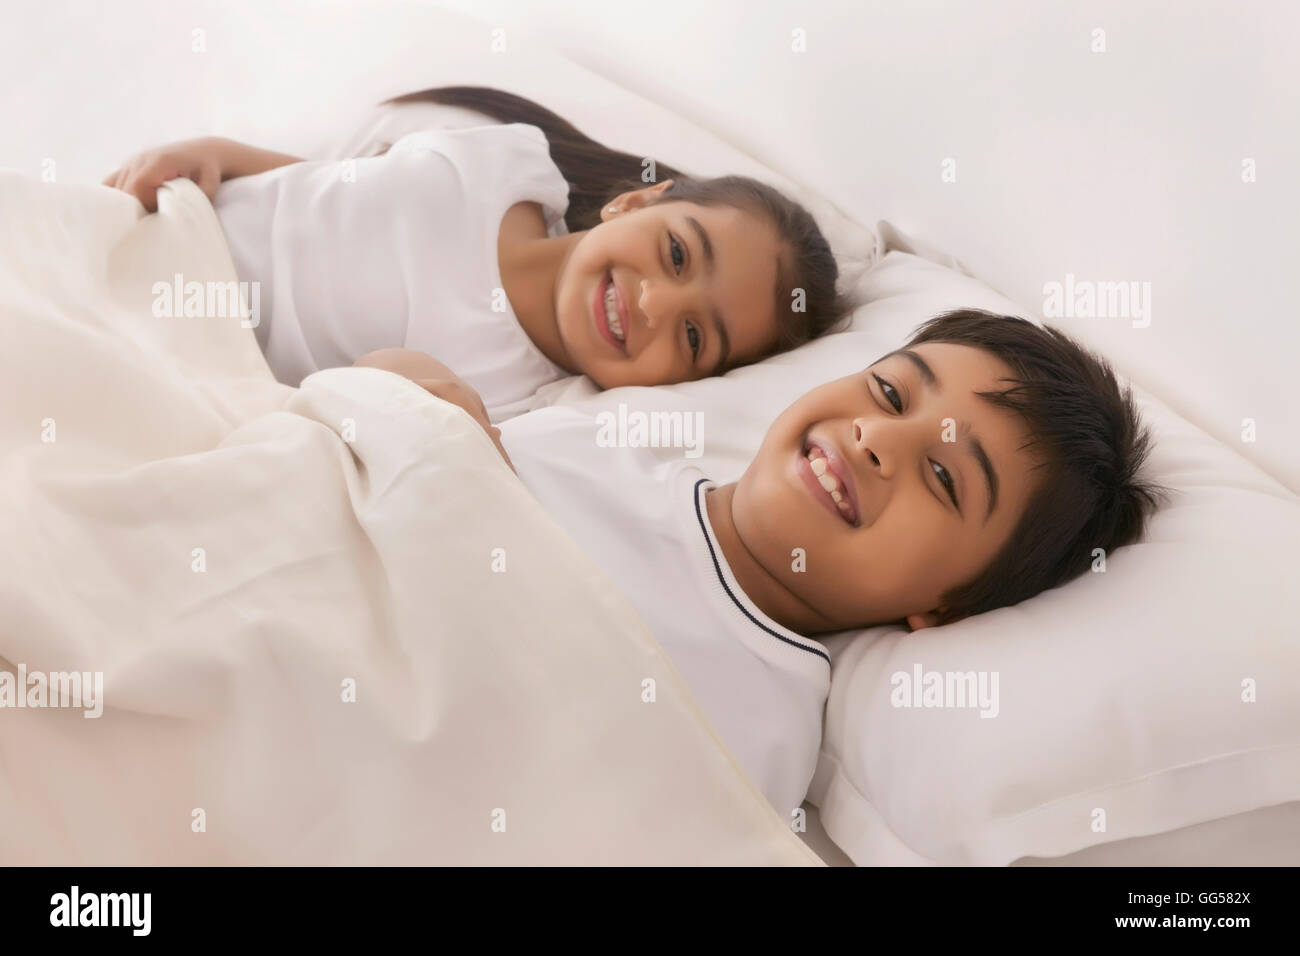 Porträt des Lächelns, Bruder und Schwester im Bett schlafen Stockfotografie...